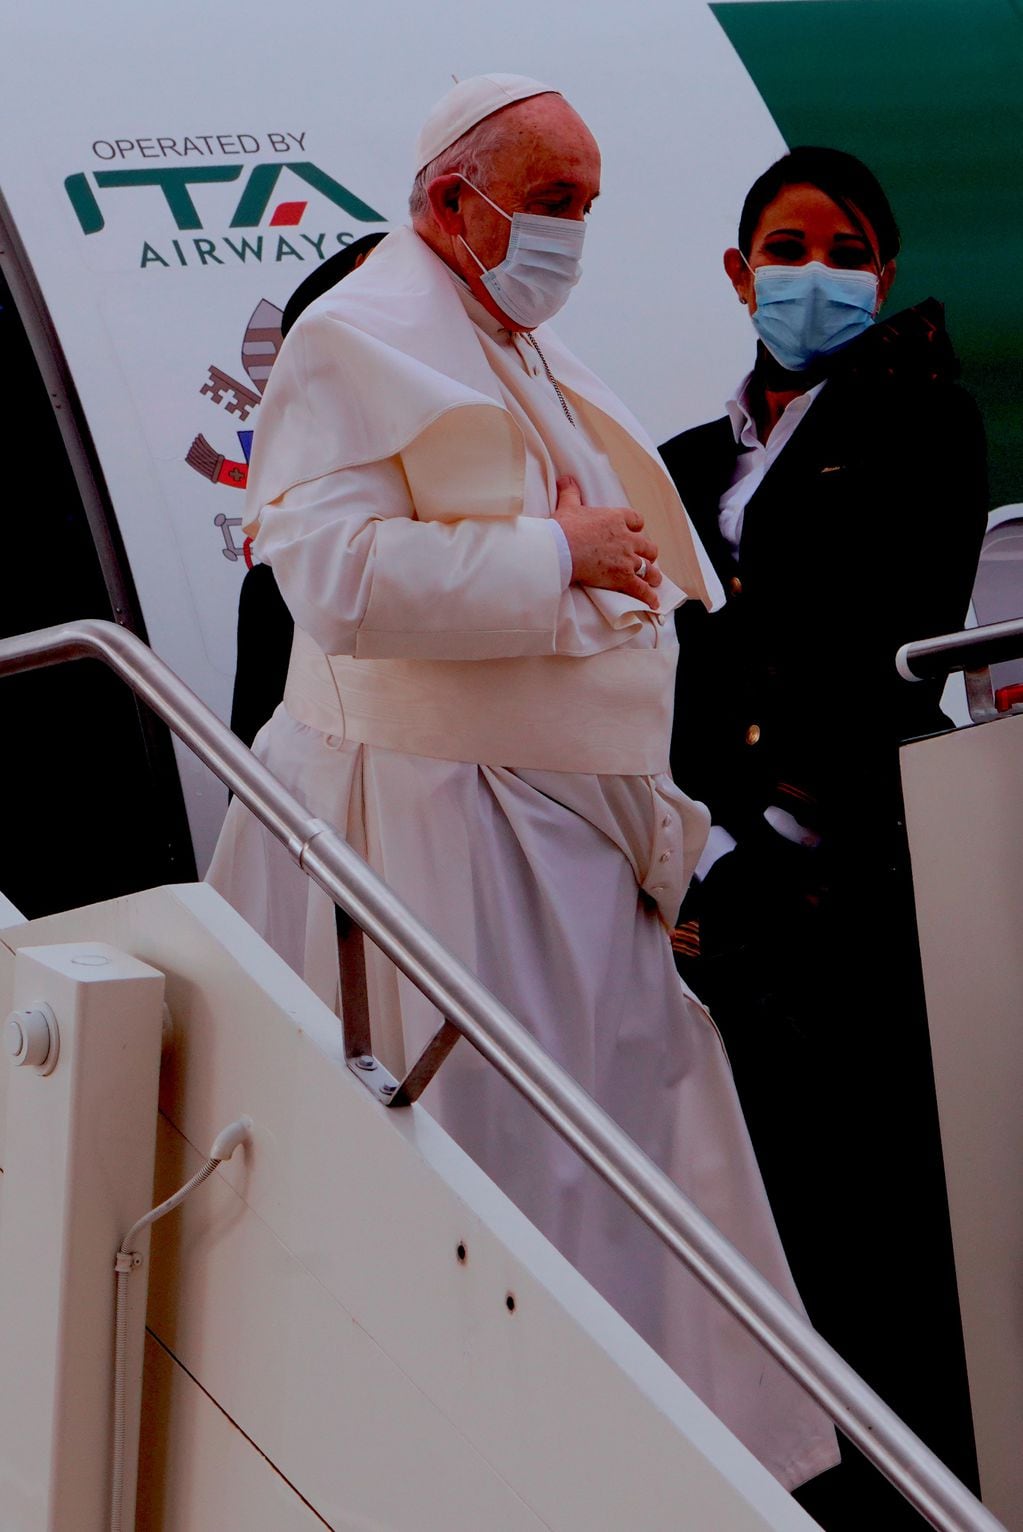 La imagen del papa Francisco en la escalerilla del avión de ITA Airways. Foto: AP/Domenico Stinellis